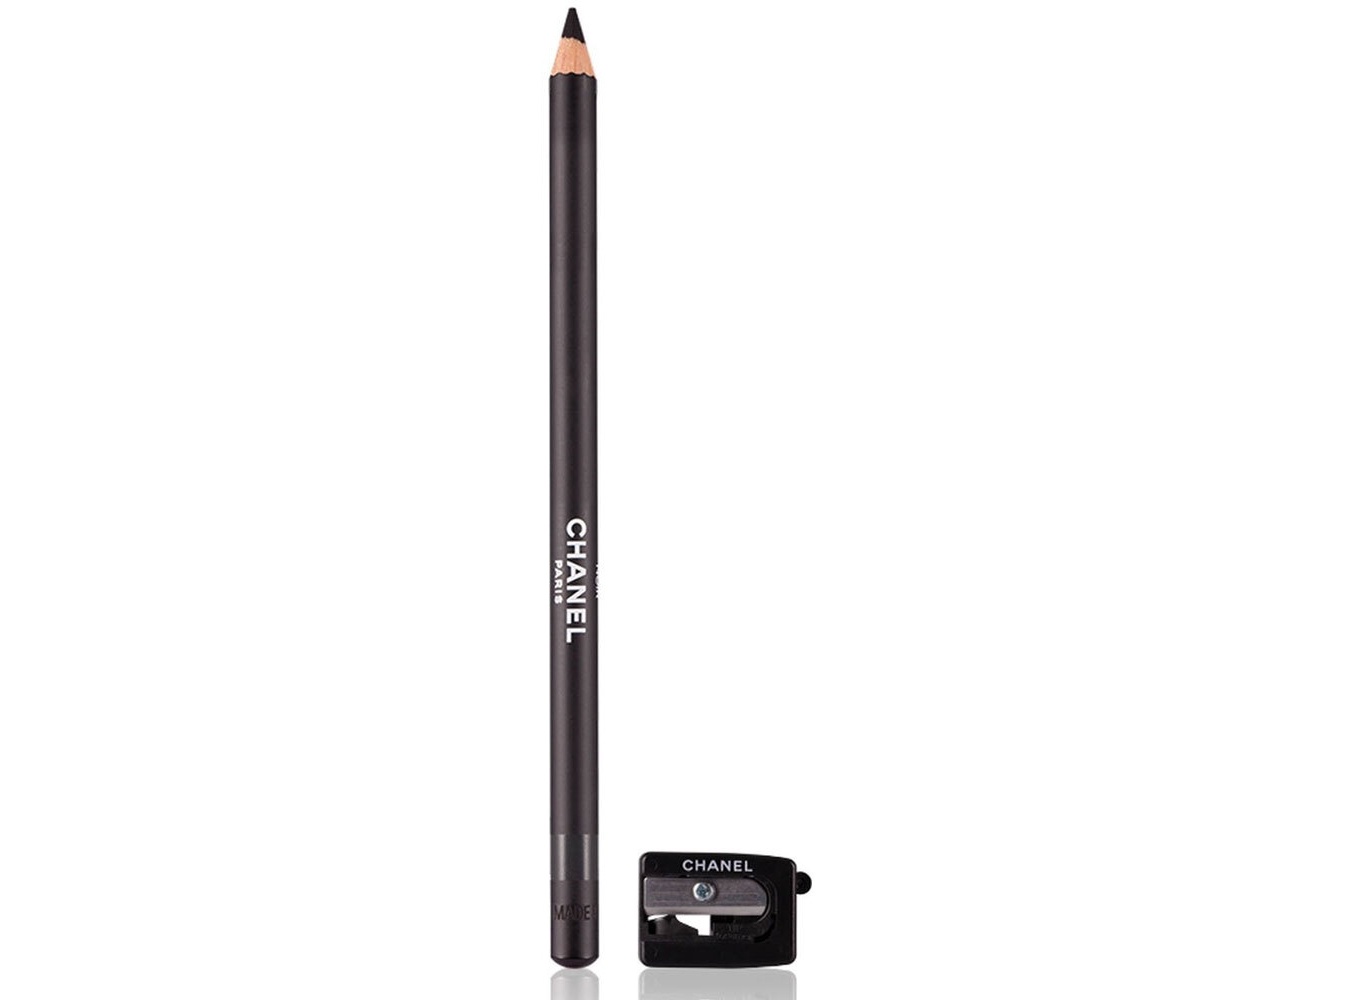 Chanel Le Crayon Khol Eye Pencil 61 Noir 1,4gr